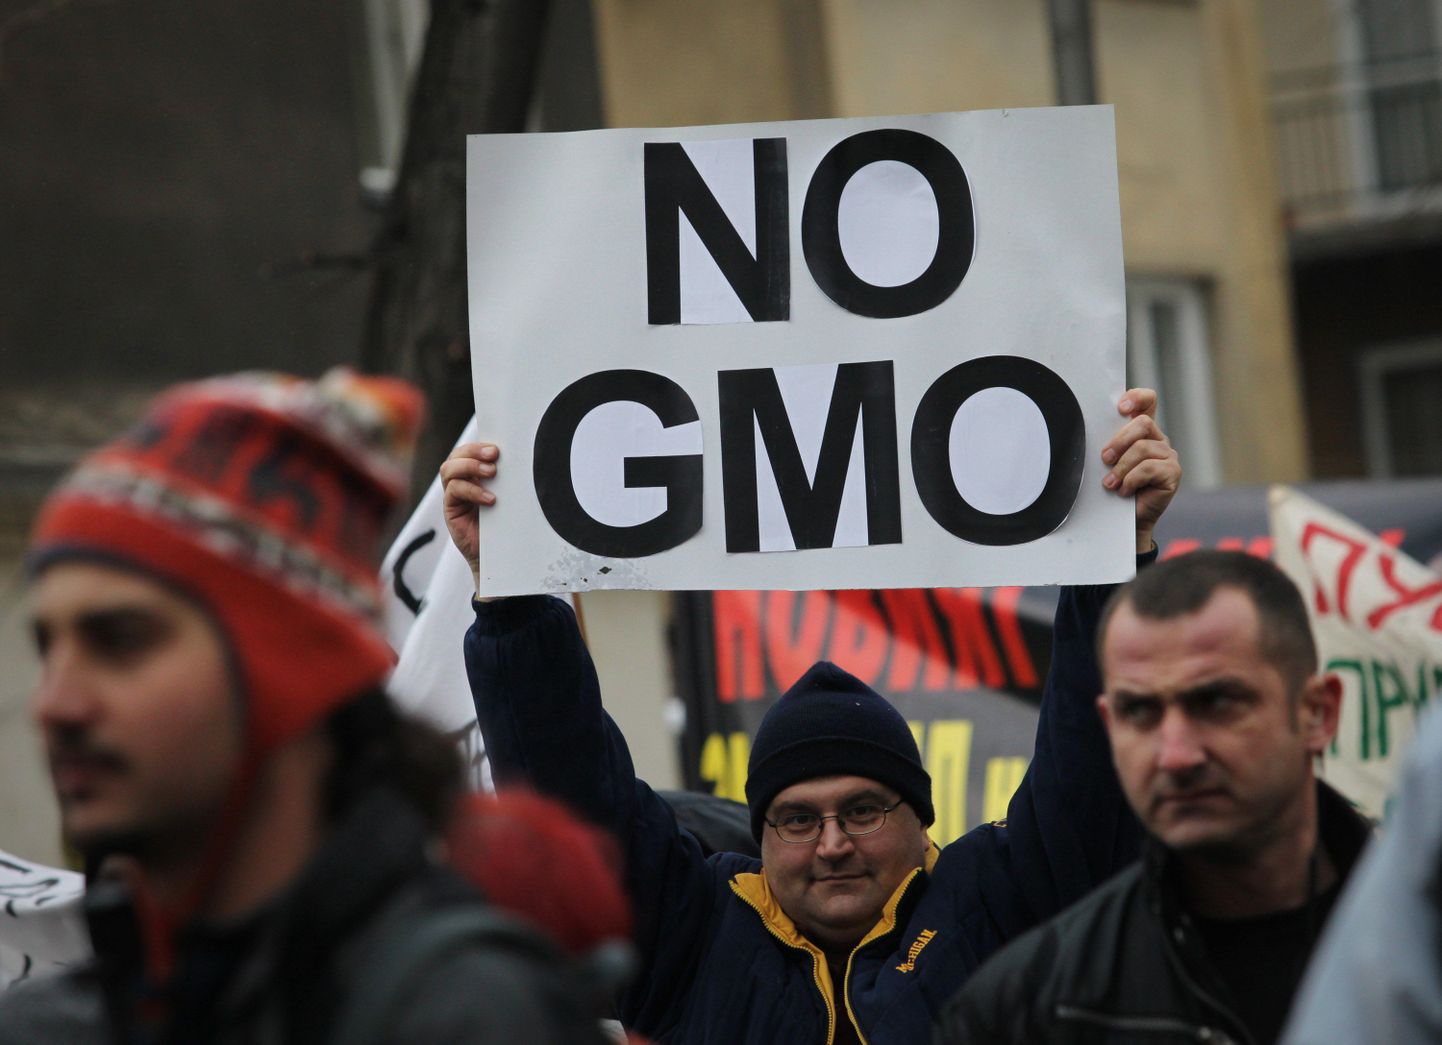 Plakat bulgaarlaste korraldatud GMO-toitude vastasel meeleavaldusel. Pilt tehtud läinud aasta lõpus.